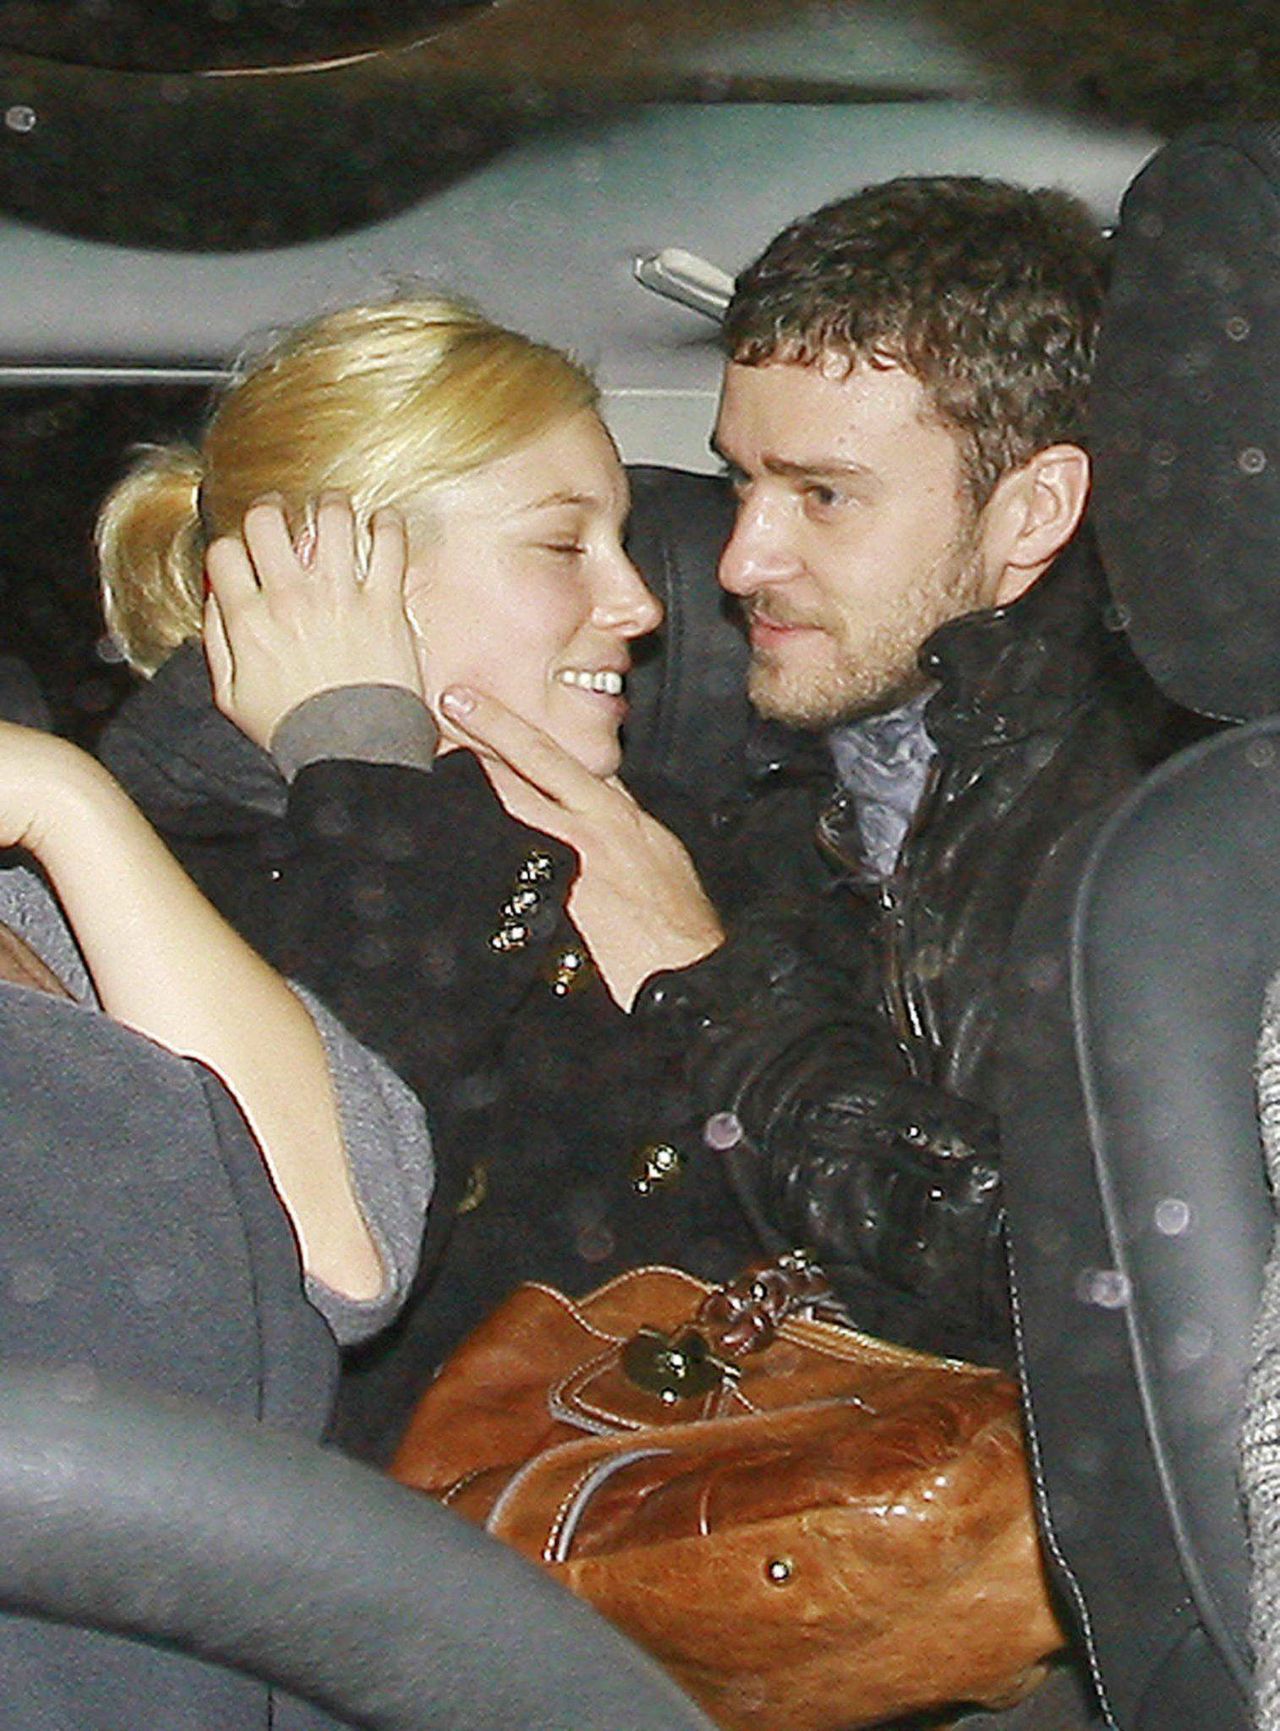 Justin Timberlake i Jessica Biel spotykali się od lutego 2007 do marca 2011 roku, wrócili do siebie po czteroletniej przerwie